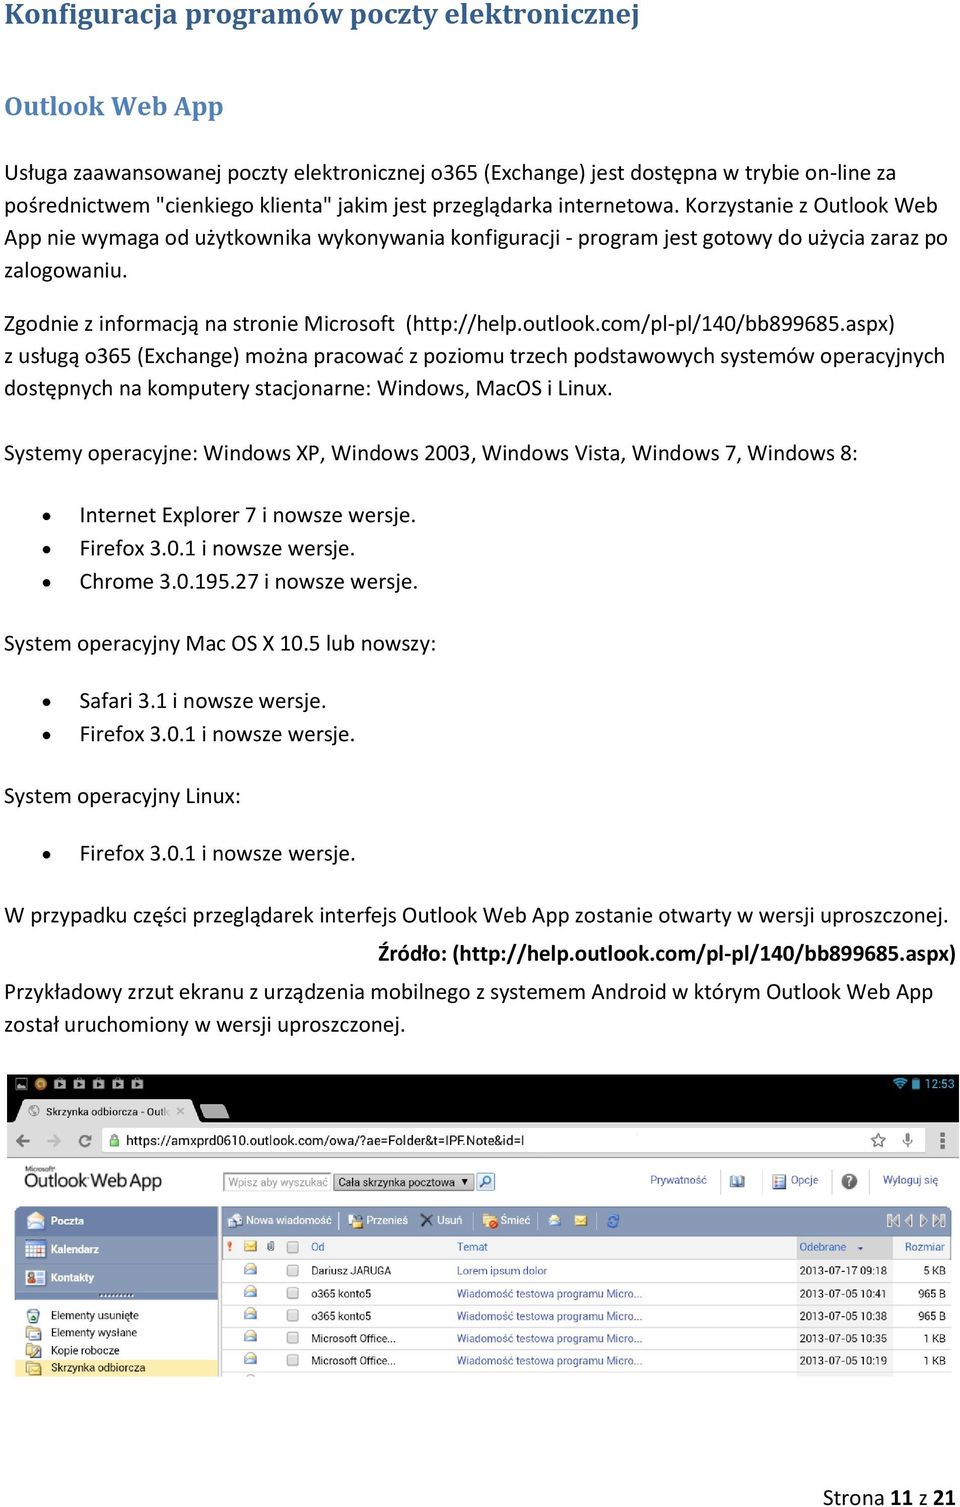 Zgodnie z informacją na stronie Microsoft (http://help.outlook.com/pl-pl/140/bb899685.